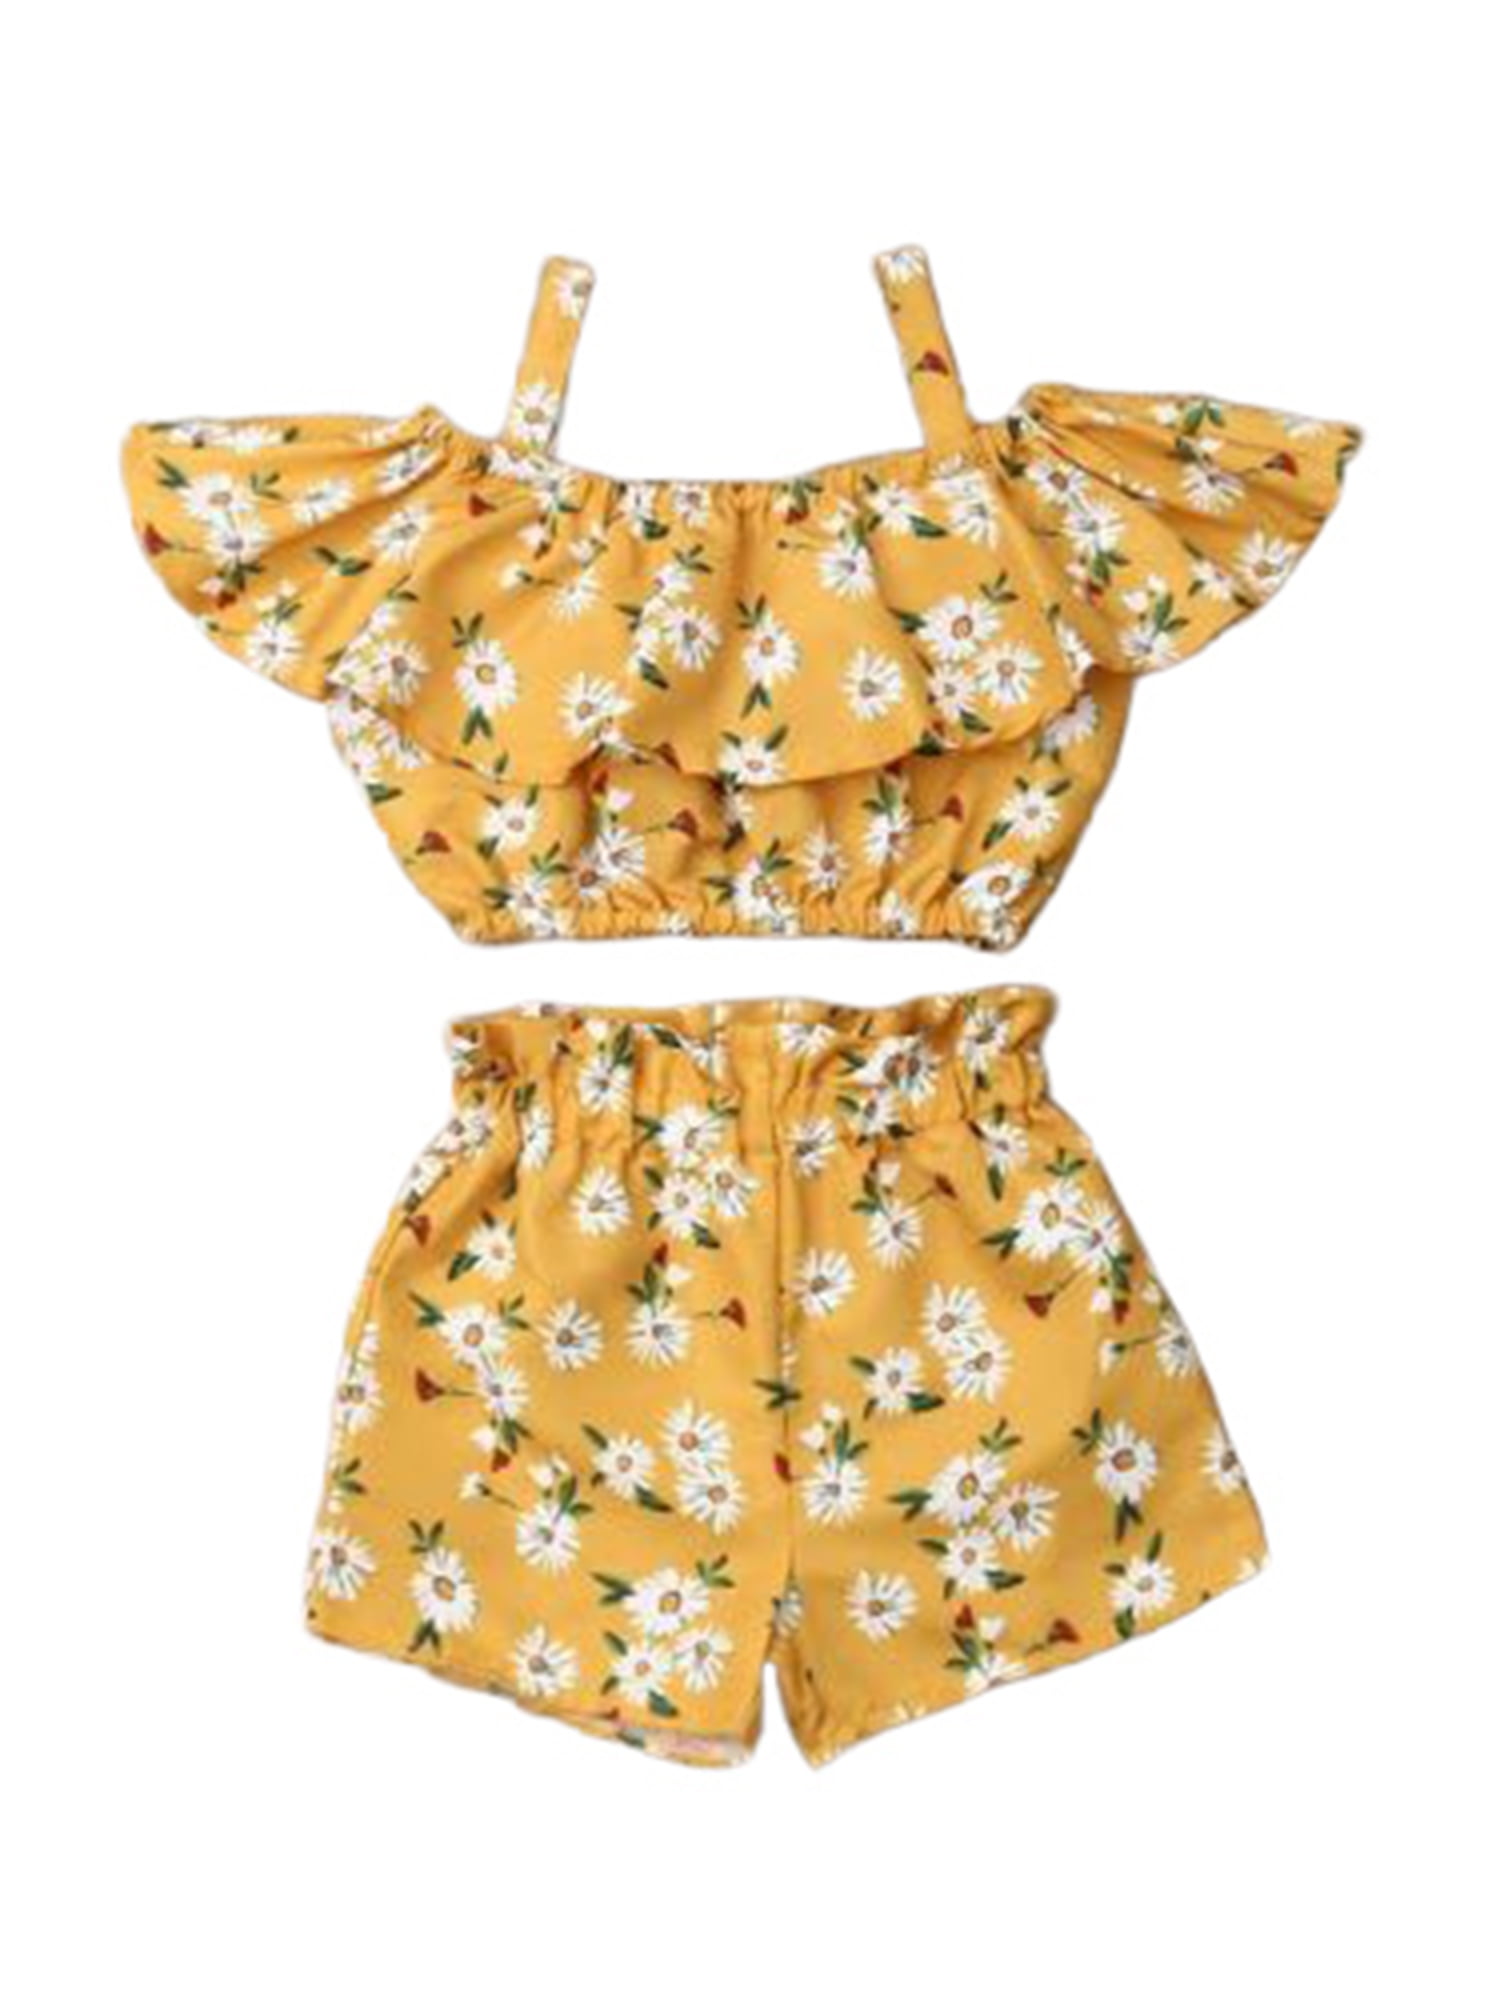 Jacquis Unisex Baby Orange Short Sleeve Kimono T-Shirt